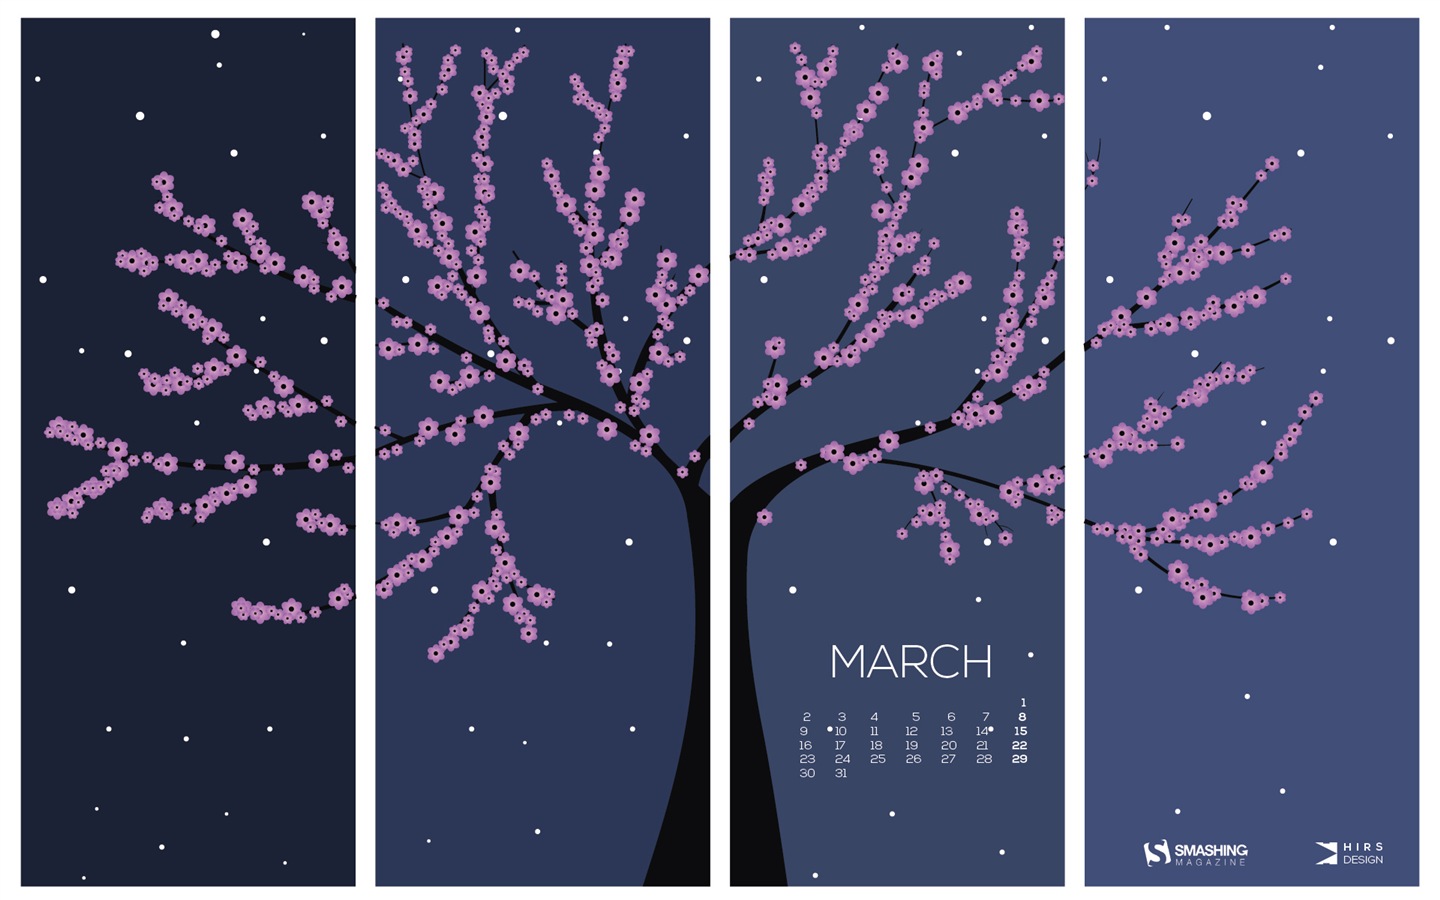 March 2015 Calendar wallpaper (2) #15 - 1440x900